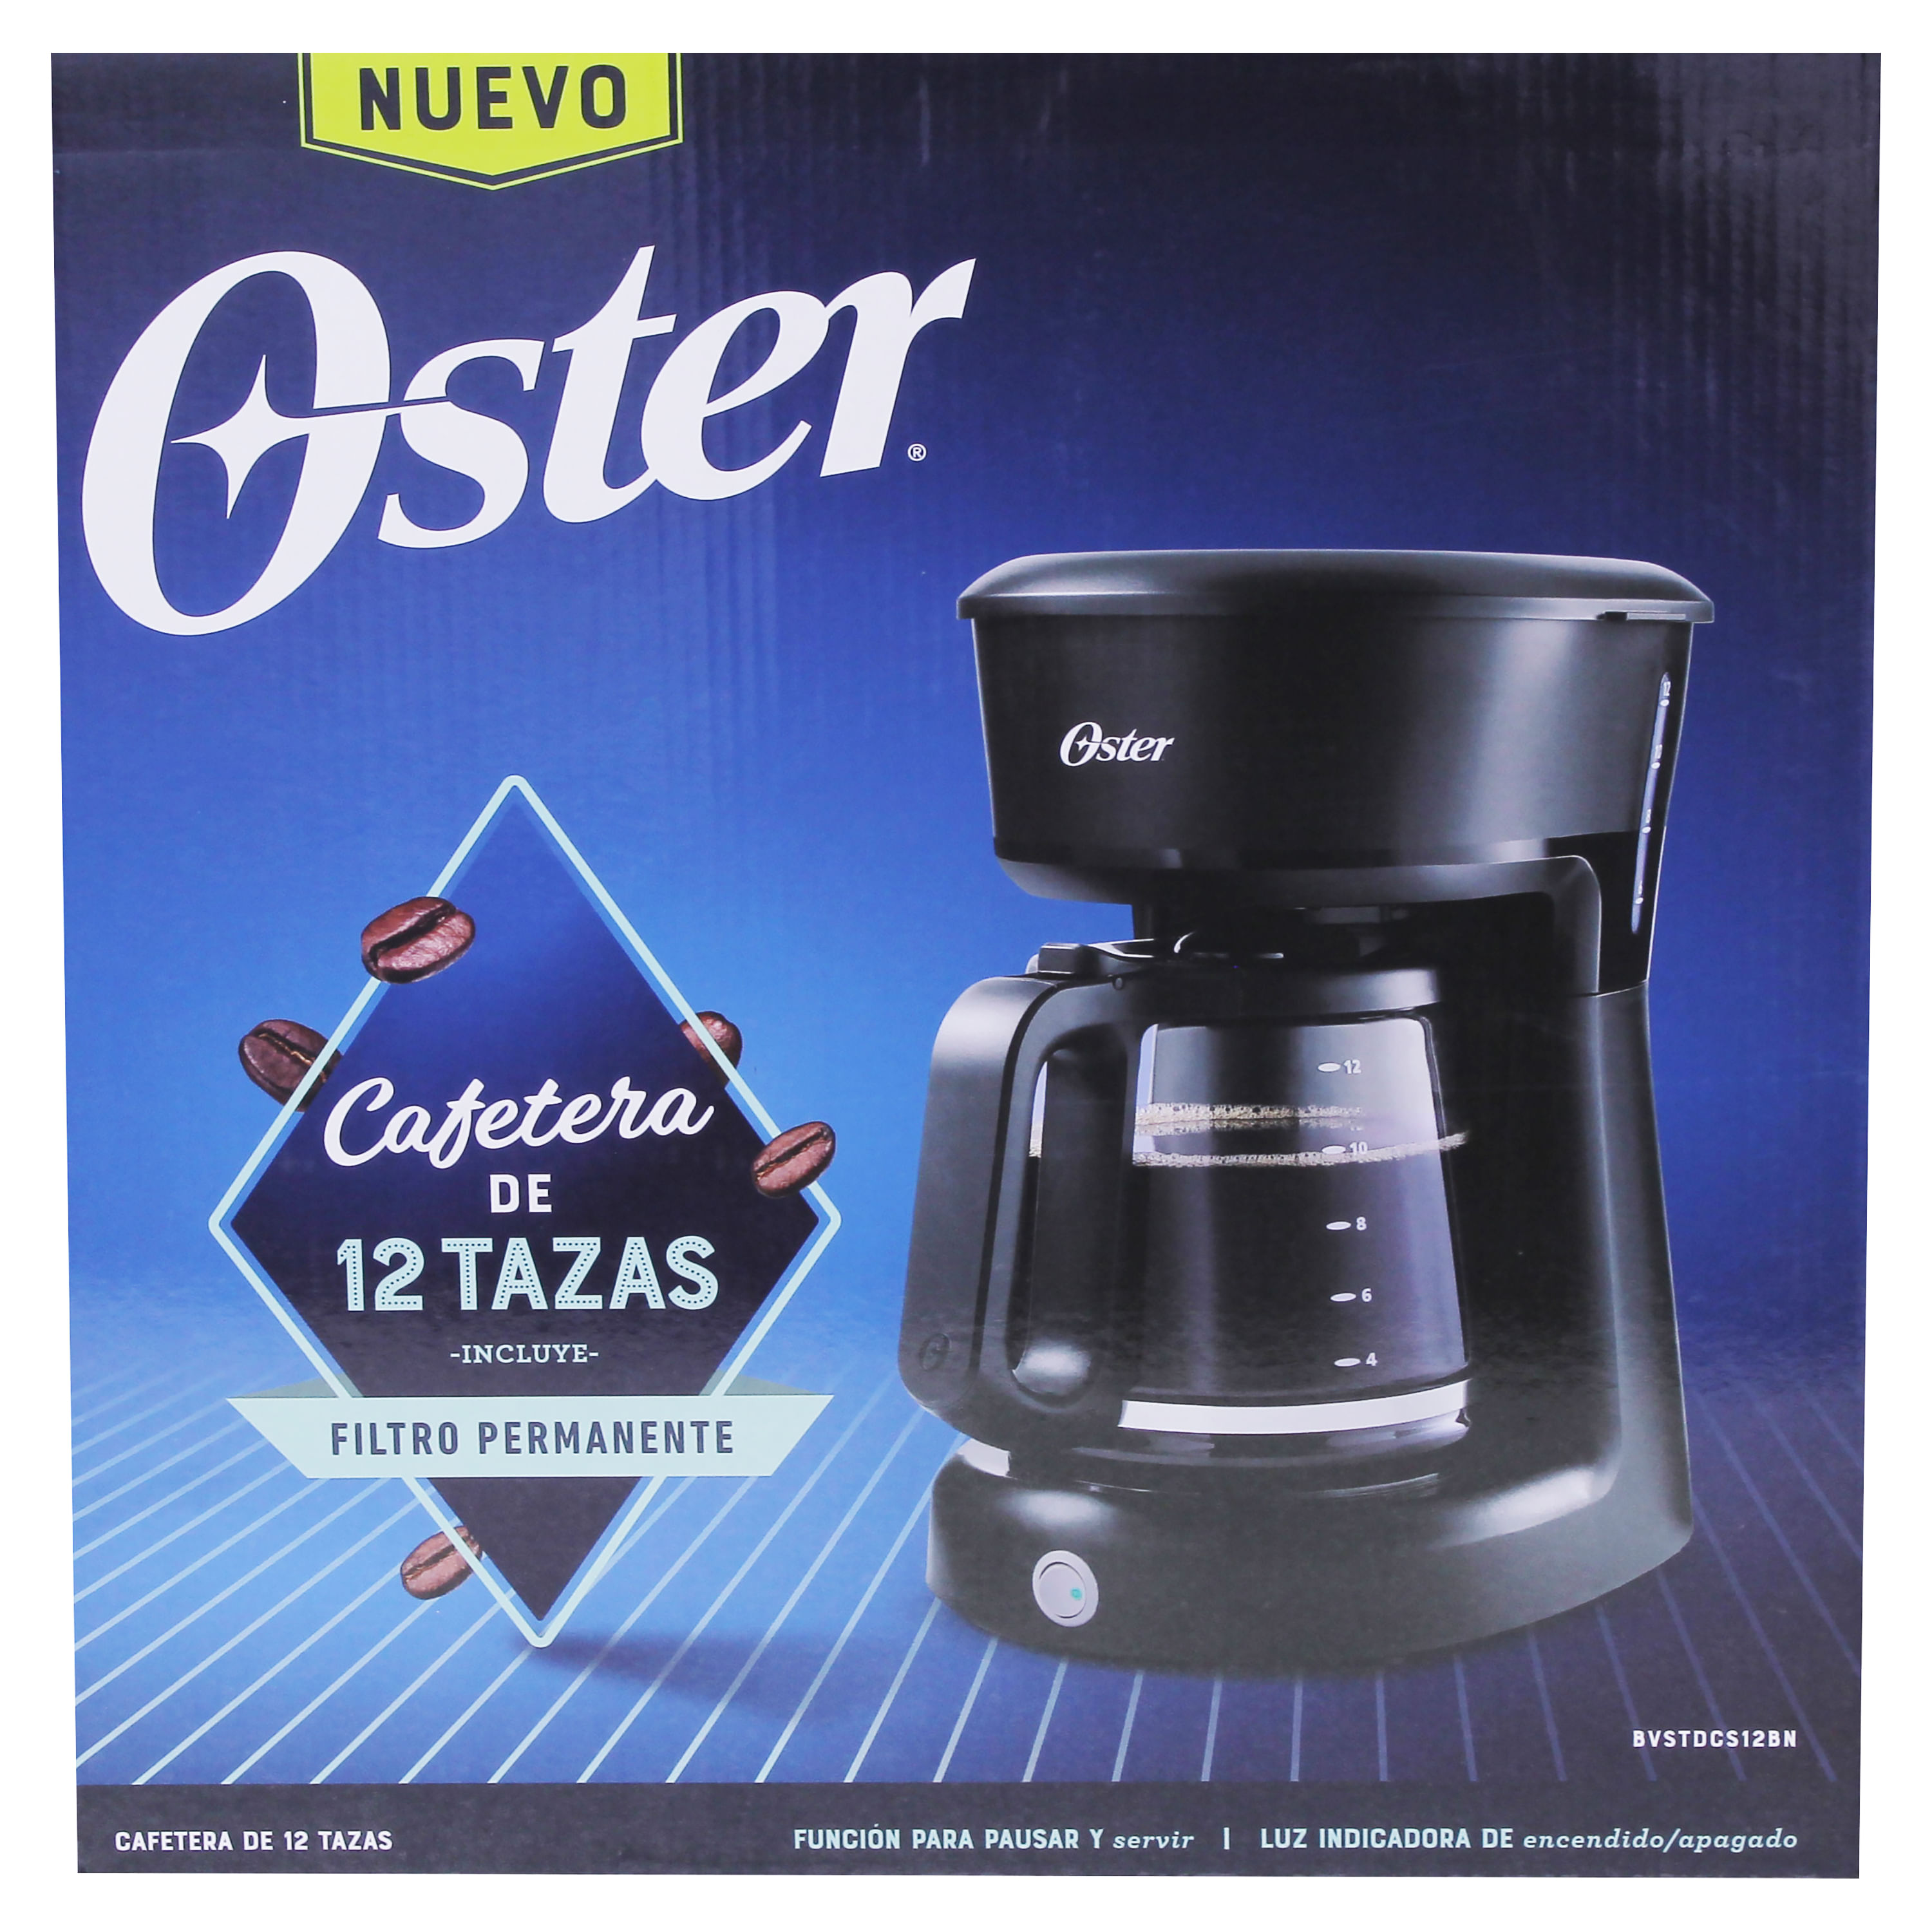 Comprar Oster Cafetera 12 Tazas, Walmart Guatemala - Maxi Despensa